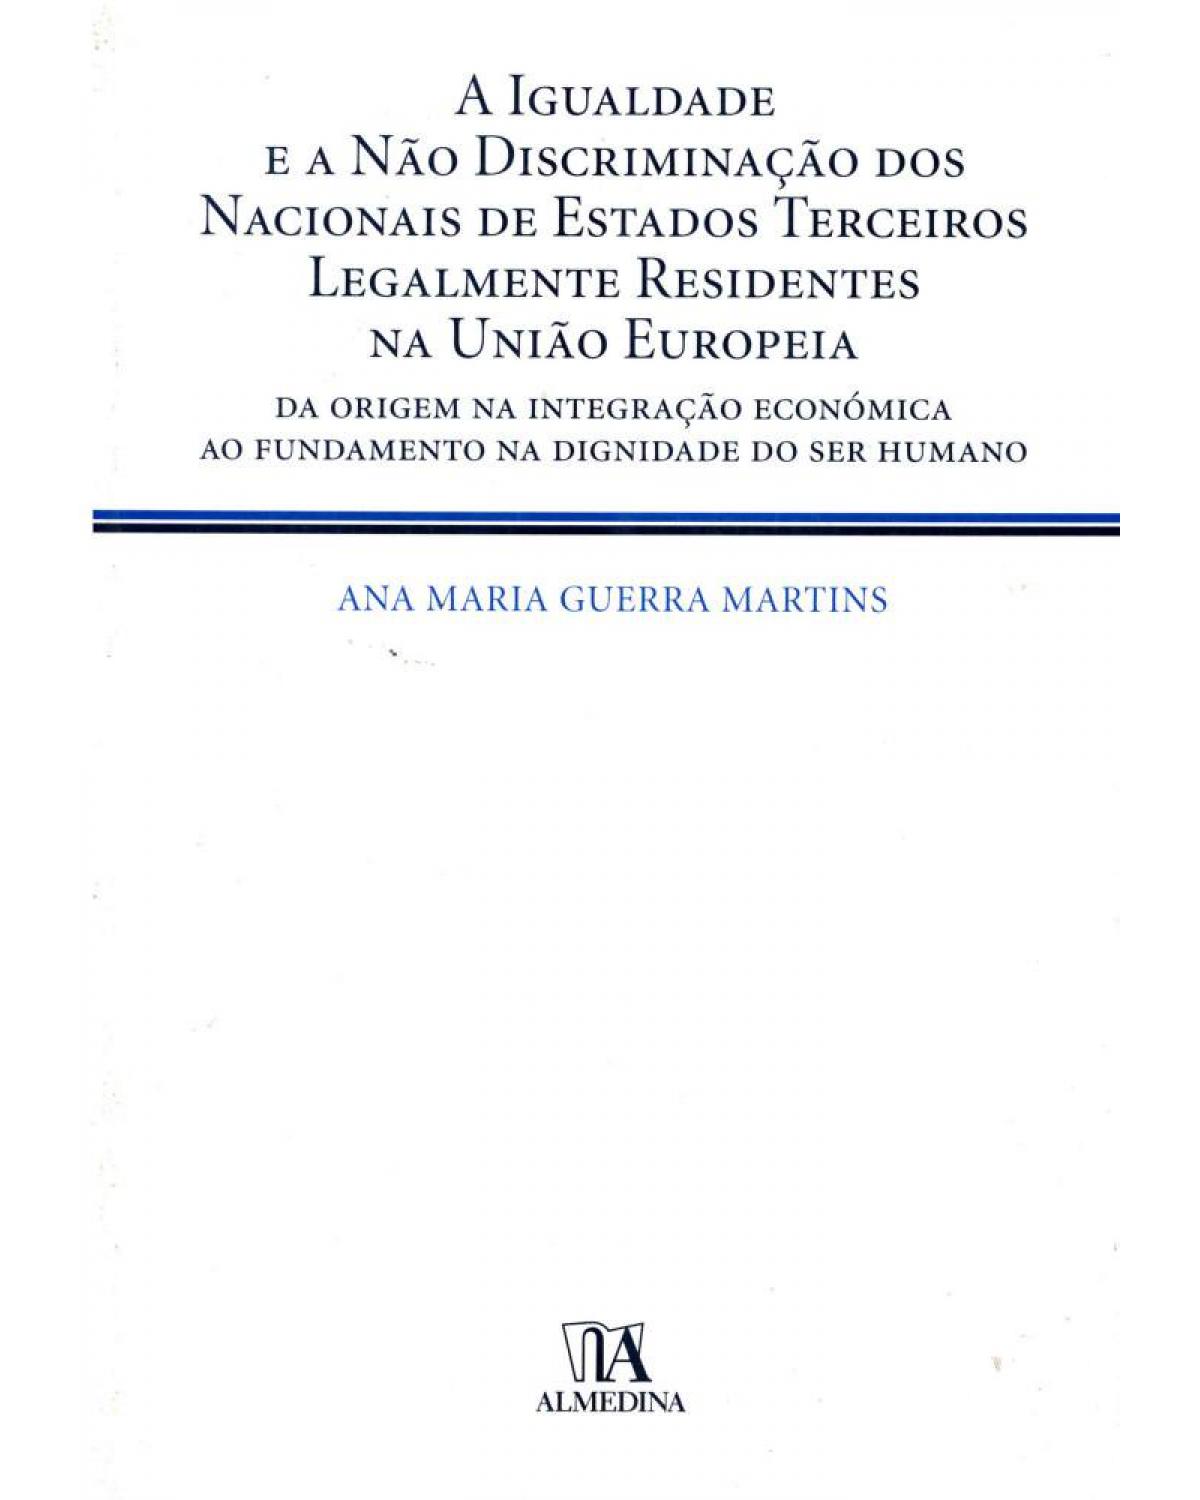 A igualdade e a não discriminação dos nacionais de Estados terceiros legalmente residentes na União Europeia: da origem na integração económica ao fundamento na dignidade do ser humano - 1ª Edição | 2010